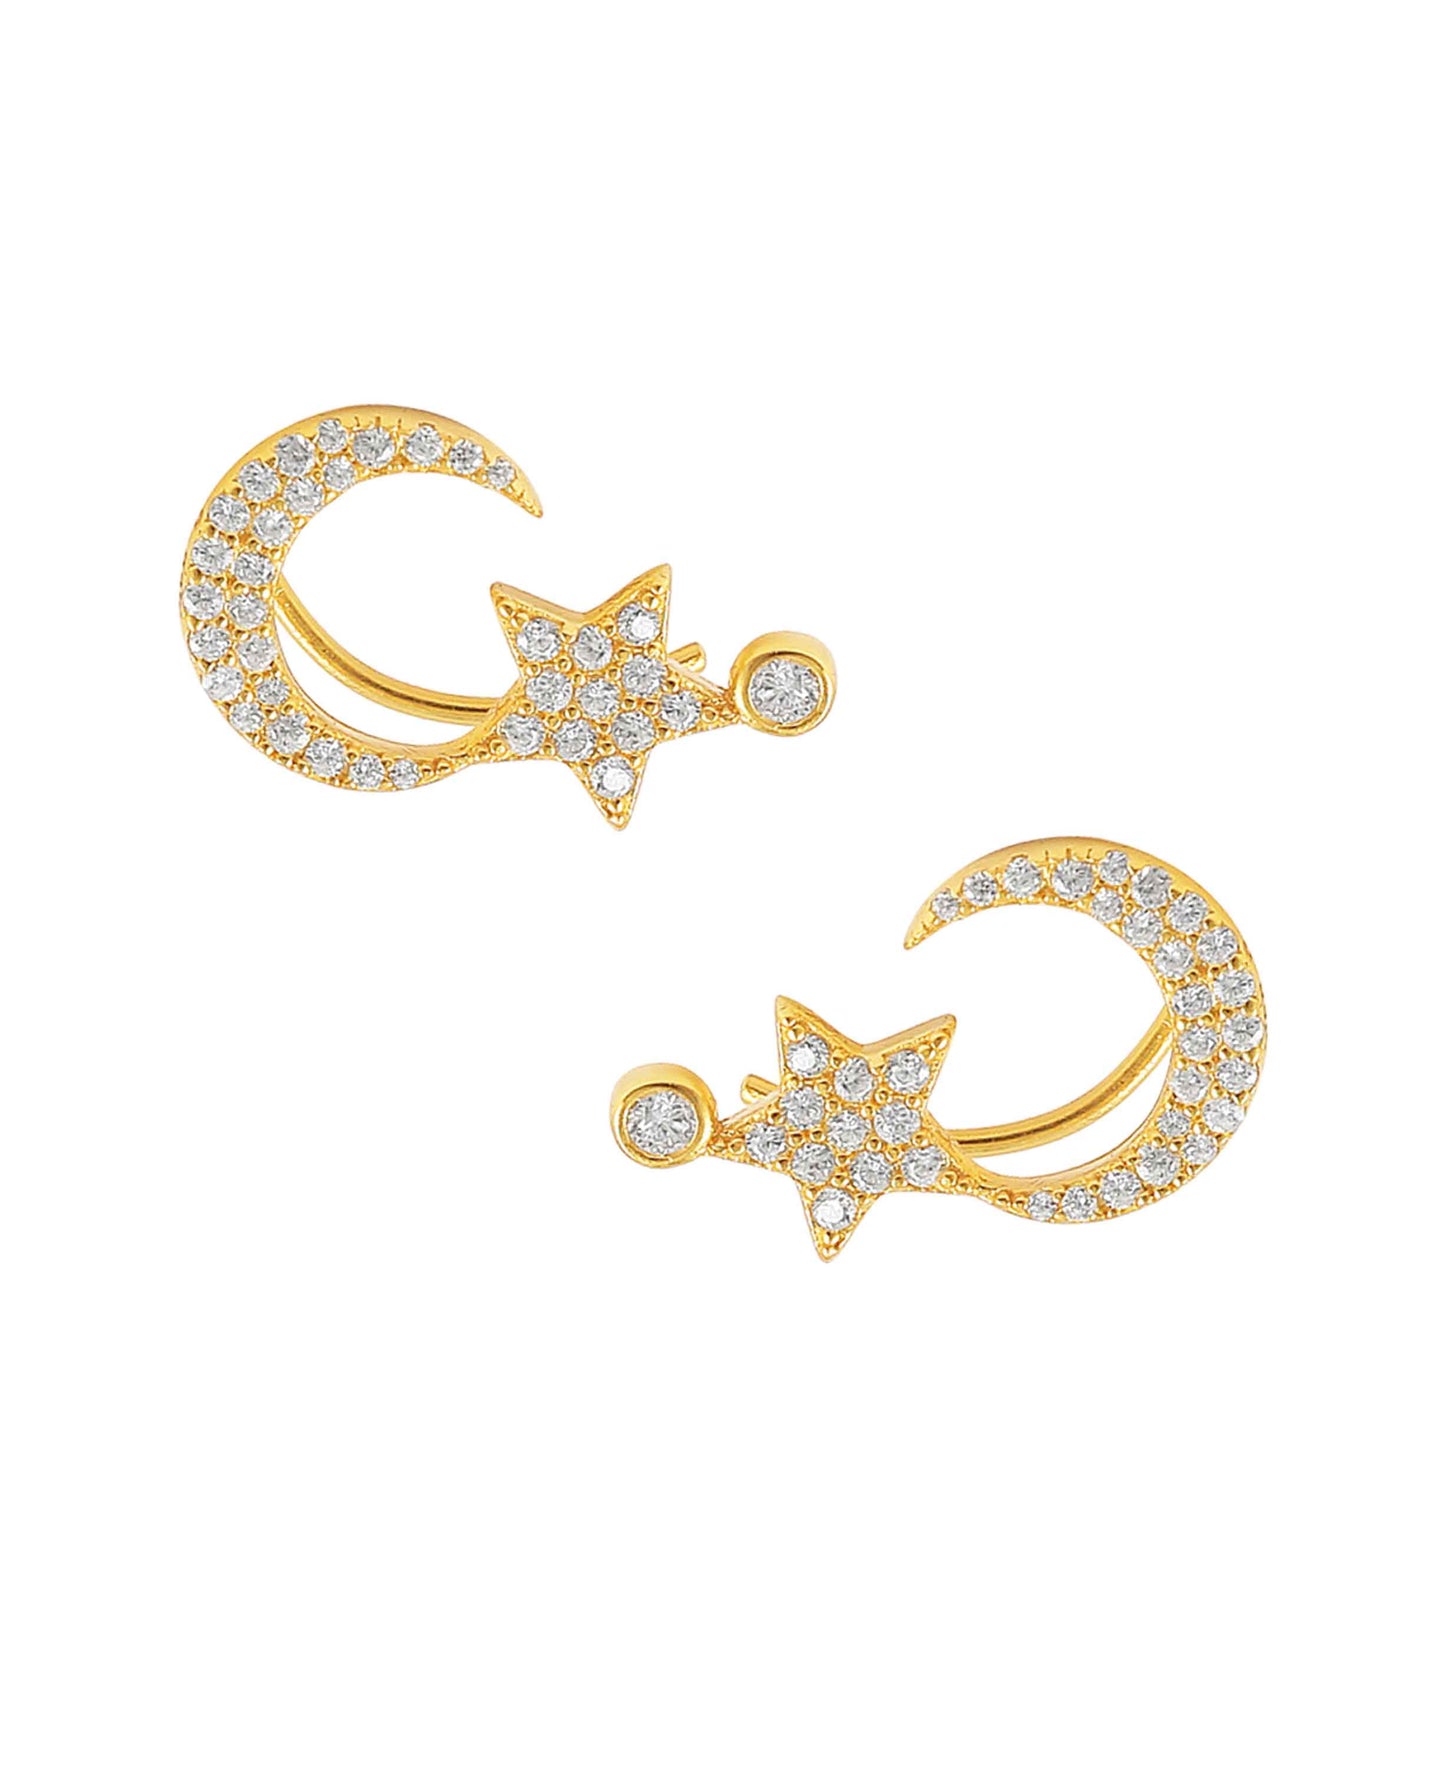 Golden Cosmo earrings